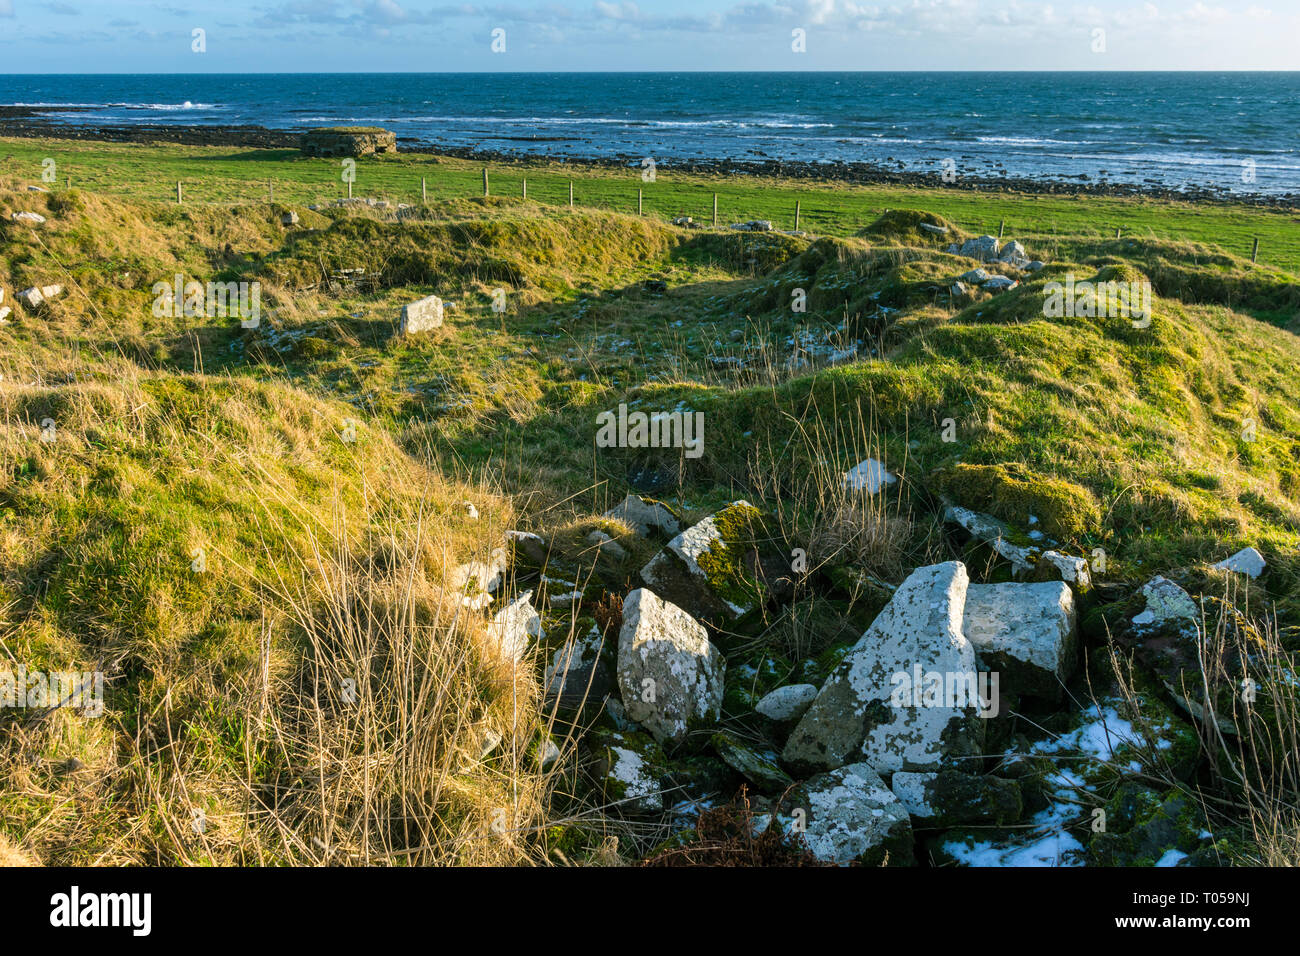 Keiss Broch, datant de l'âge du Fer (entre 600 av. et 400 AD). Sinclair's Bay, Keiss, Caithness, Ecosse, Royaume-Uni Banque D'Images